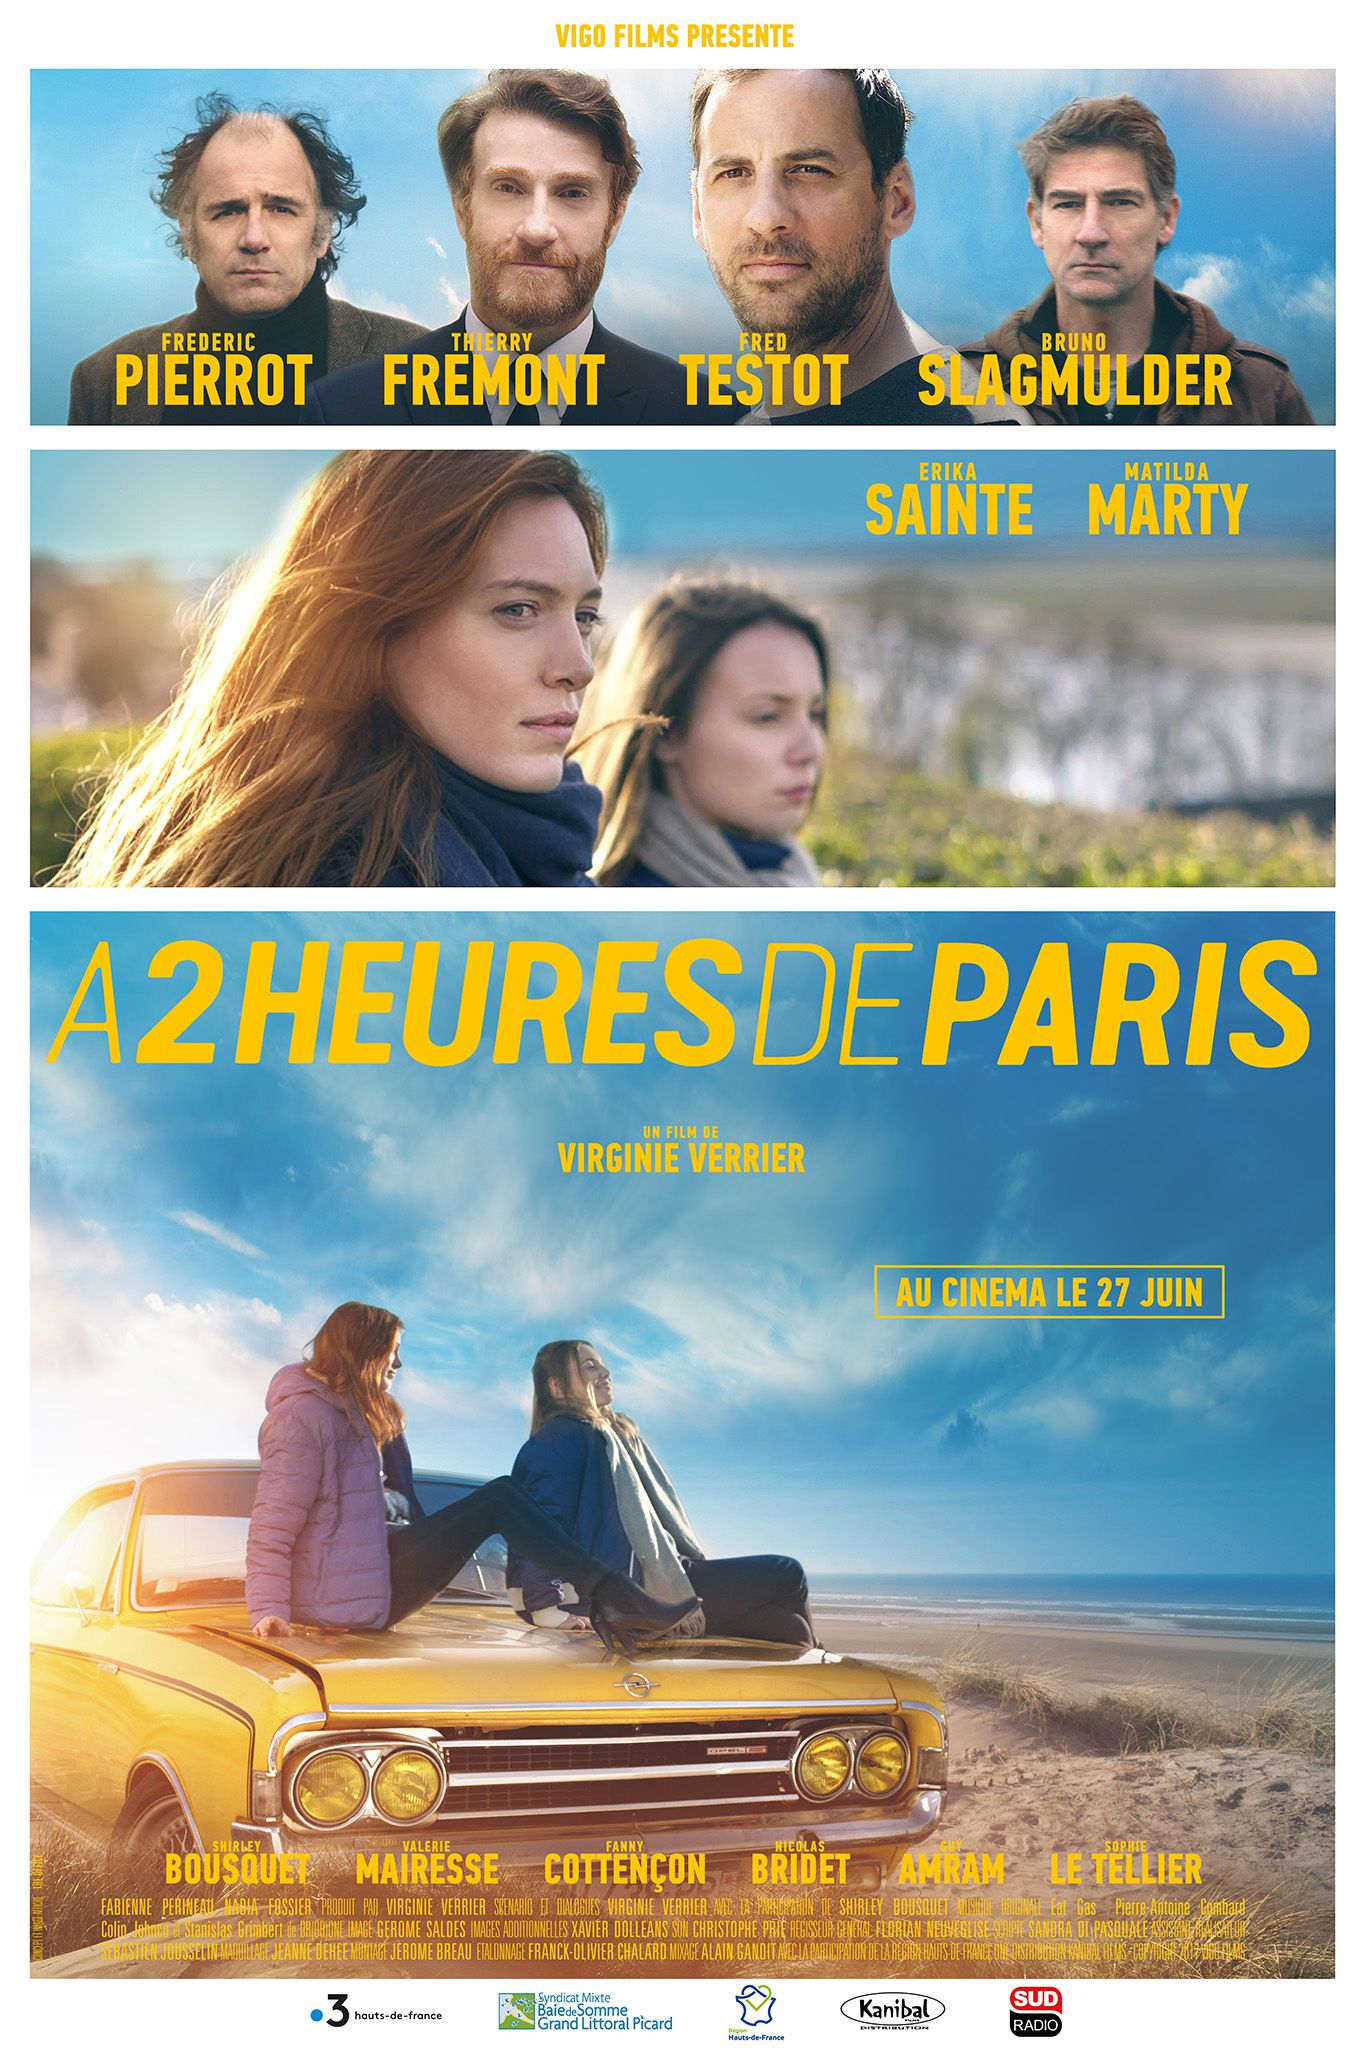 À 2 heures de Paris - Film (2018) streaming VF gratuit complet